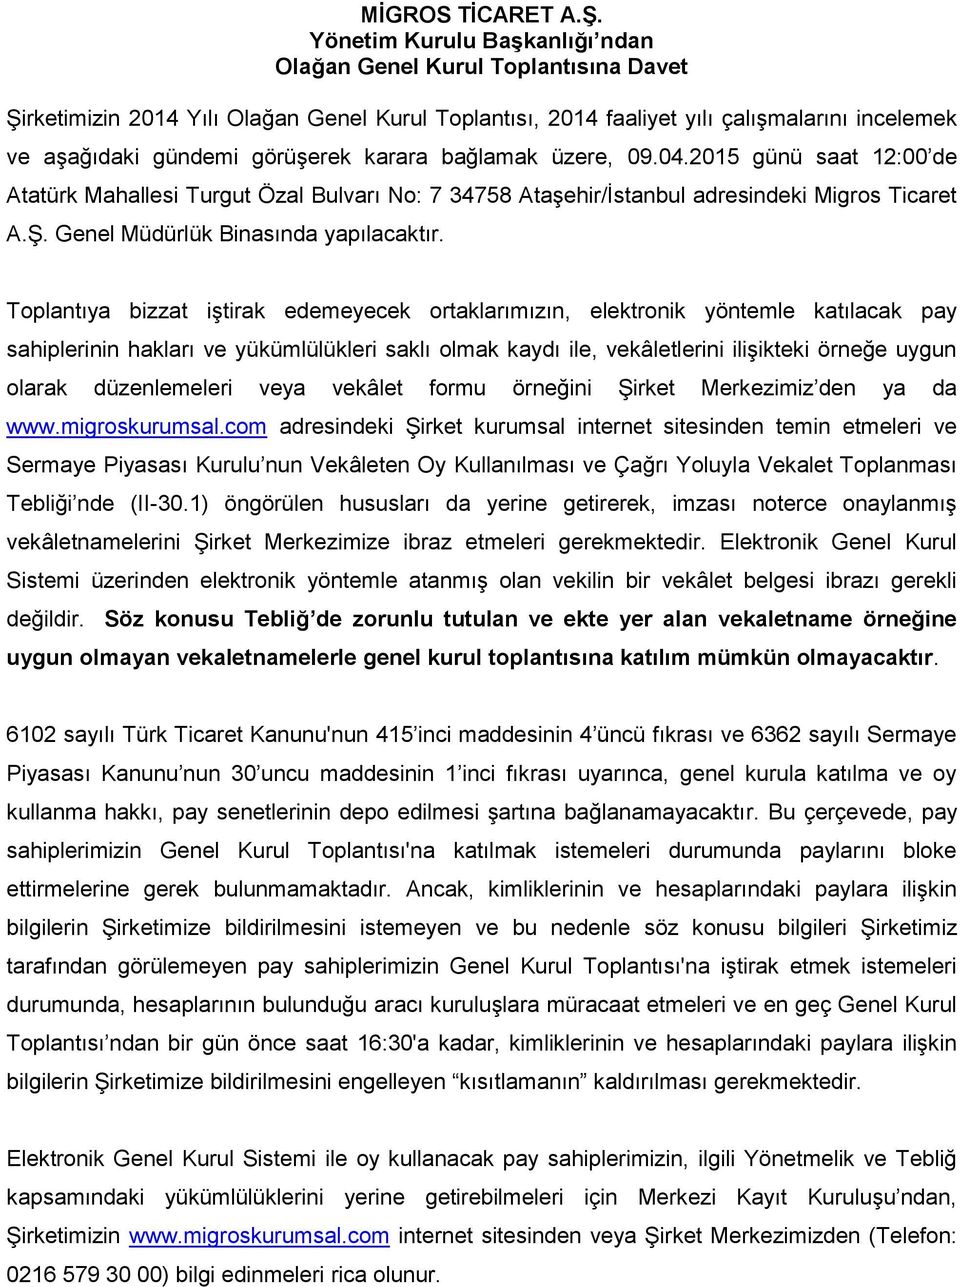 karara bağlamak üzere, 09.04.2015 günü saat 12:00 de Atatürk Mahallesi Turgut Özal Bulvarı No: 7 34758 Ataşehir/İstanbul adresindeki Migros Ticaret A.Ş. Genel Müdürlük Binasında yapılacaktır.